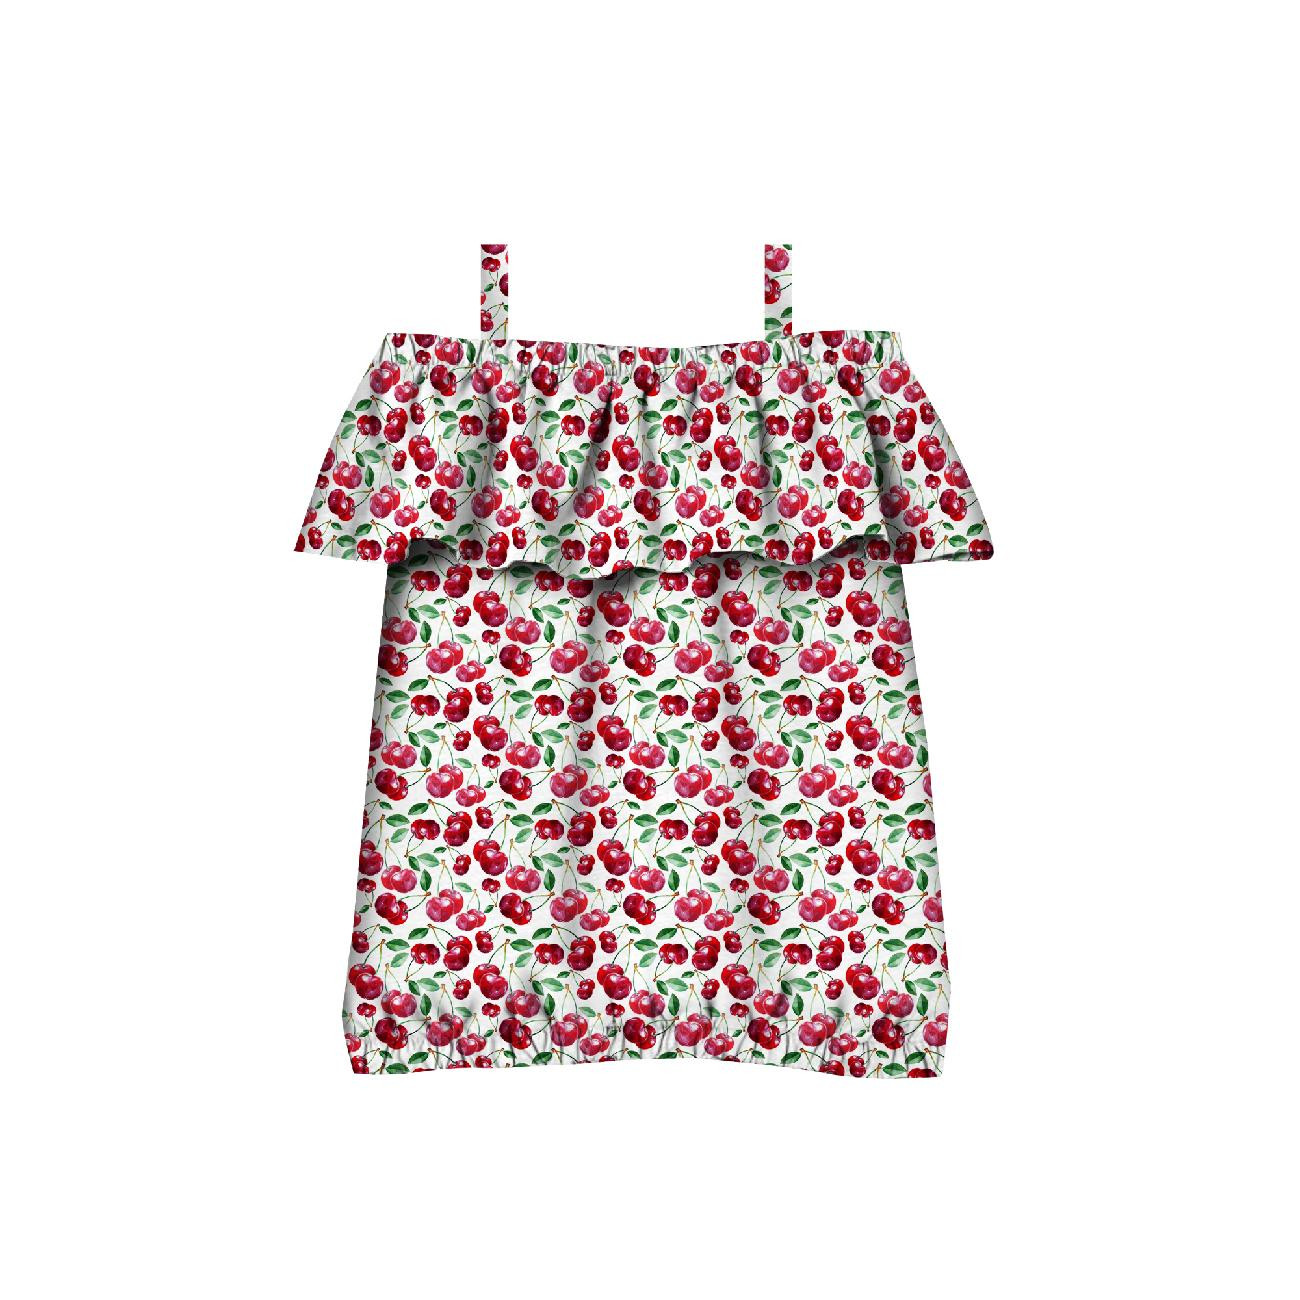 Bardot neckline blouse (SARA) - CHERRIES PAT. 5 - sewing set